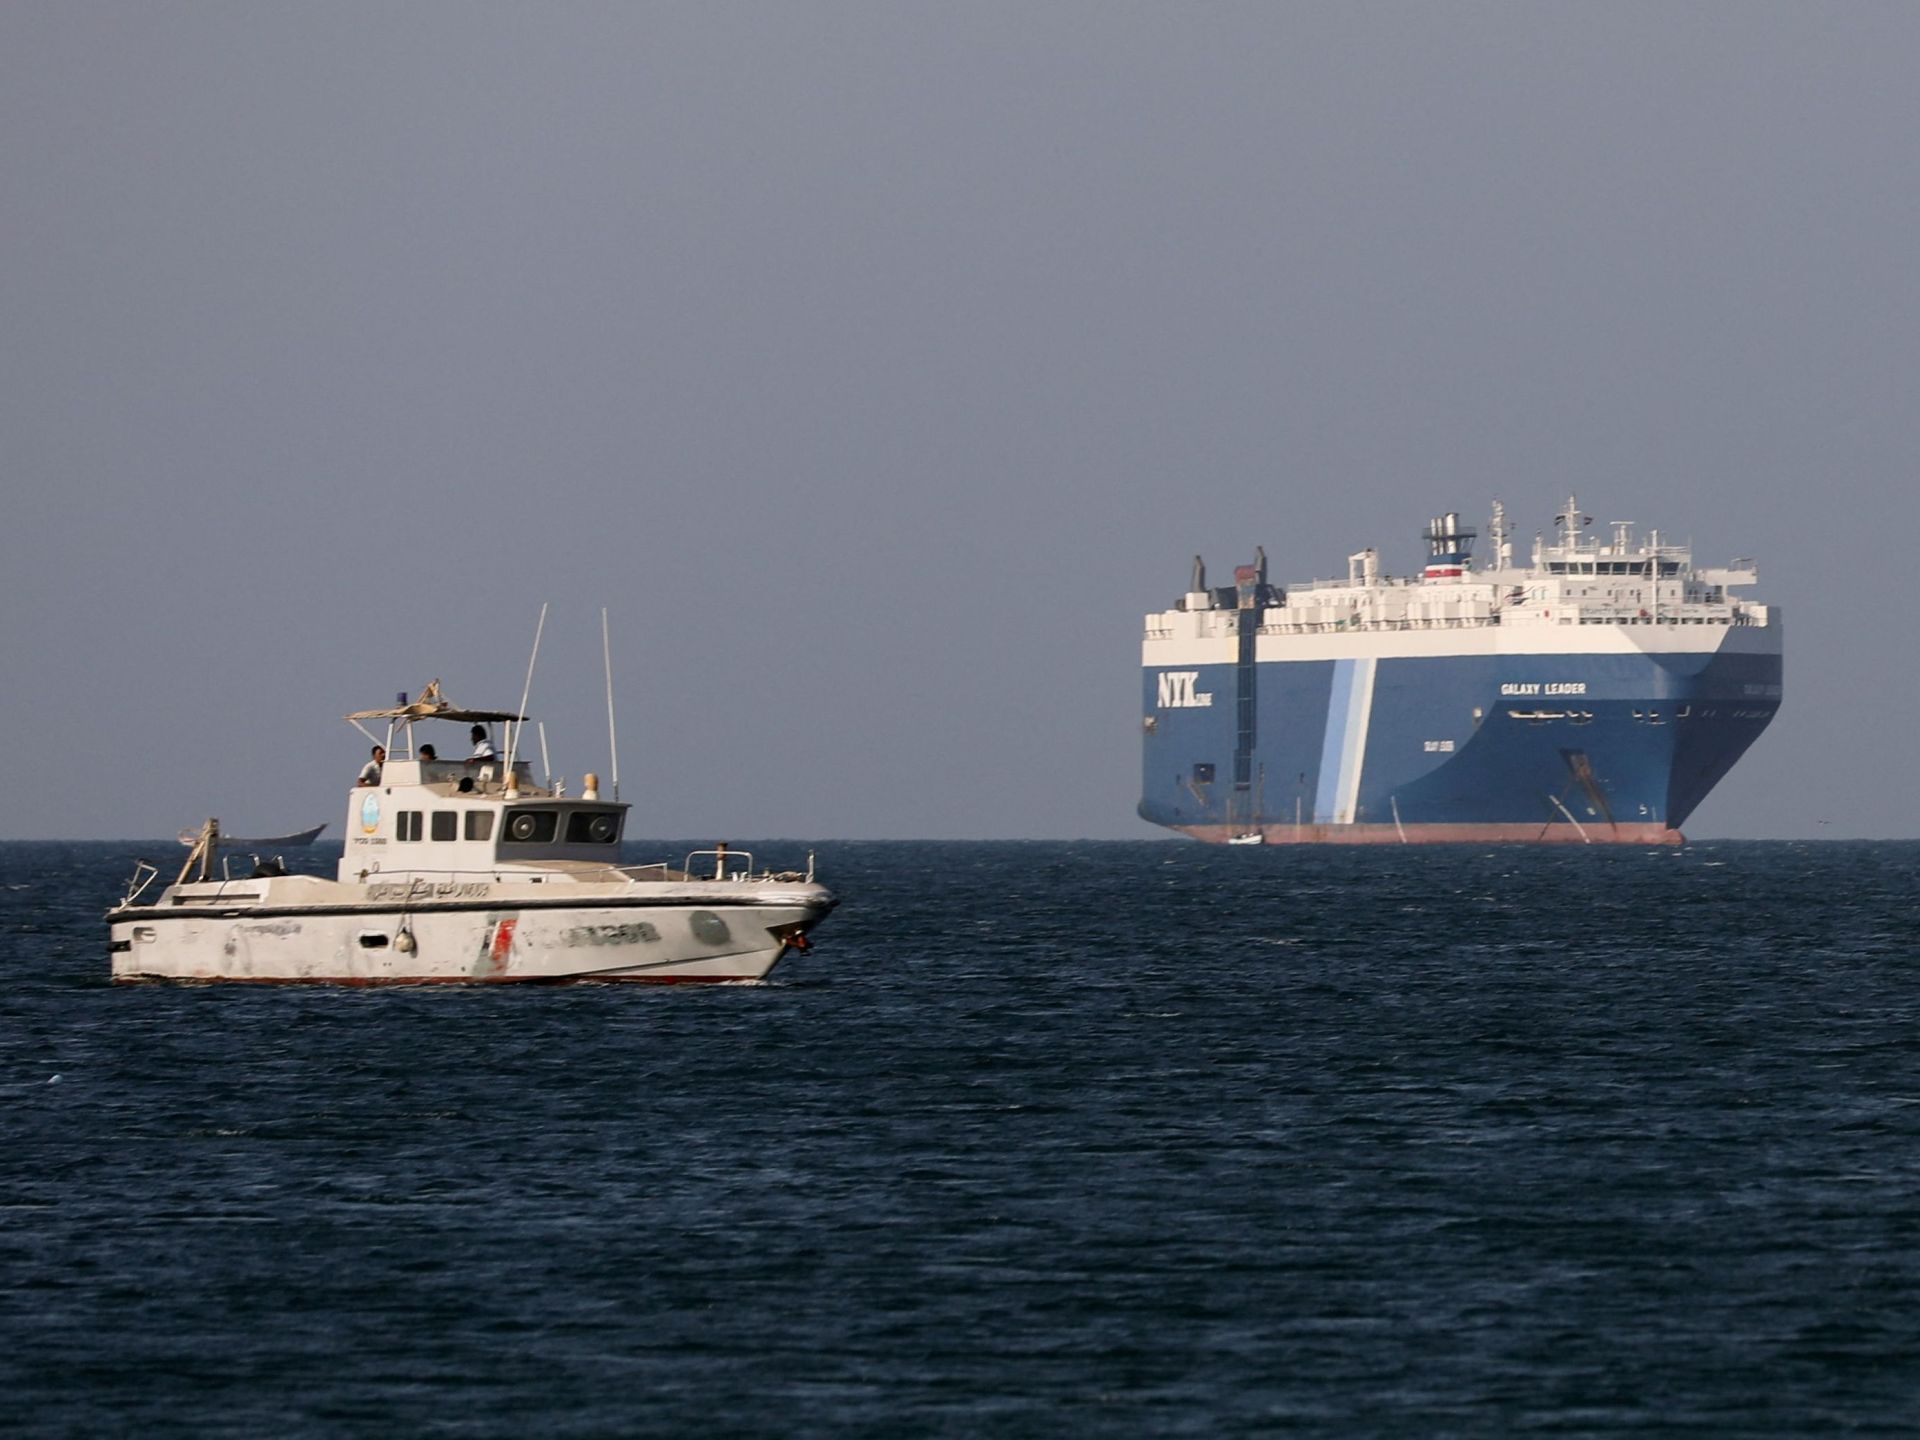 أميركا تتهم إيران بدعم هجمات الحوثيين ضد سفن بالبحر الأحمر | أخبار – البوكس نيوز